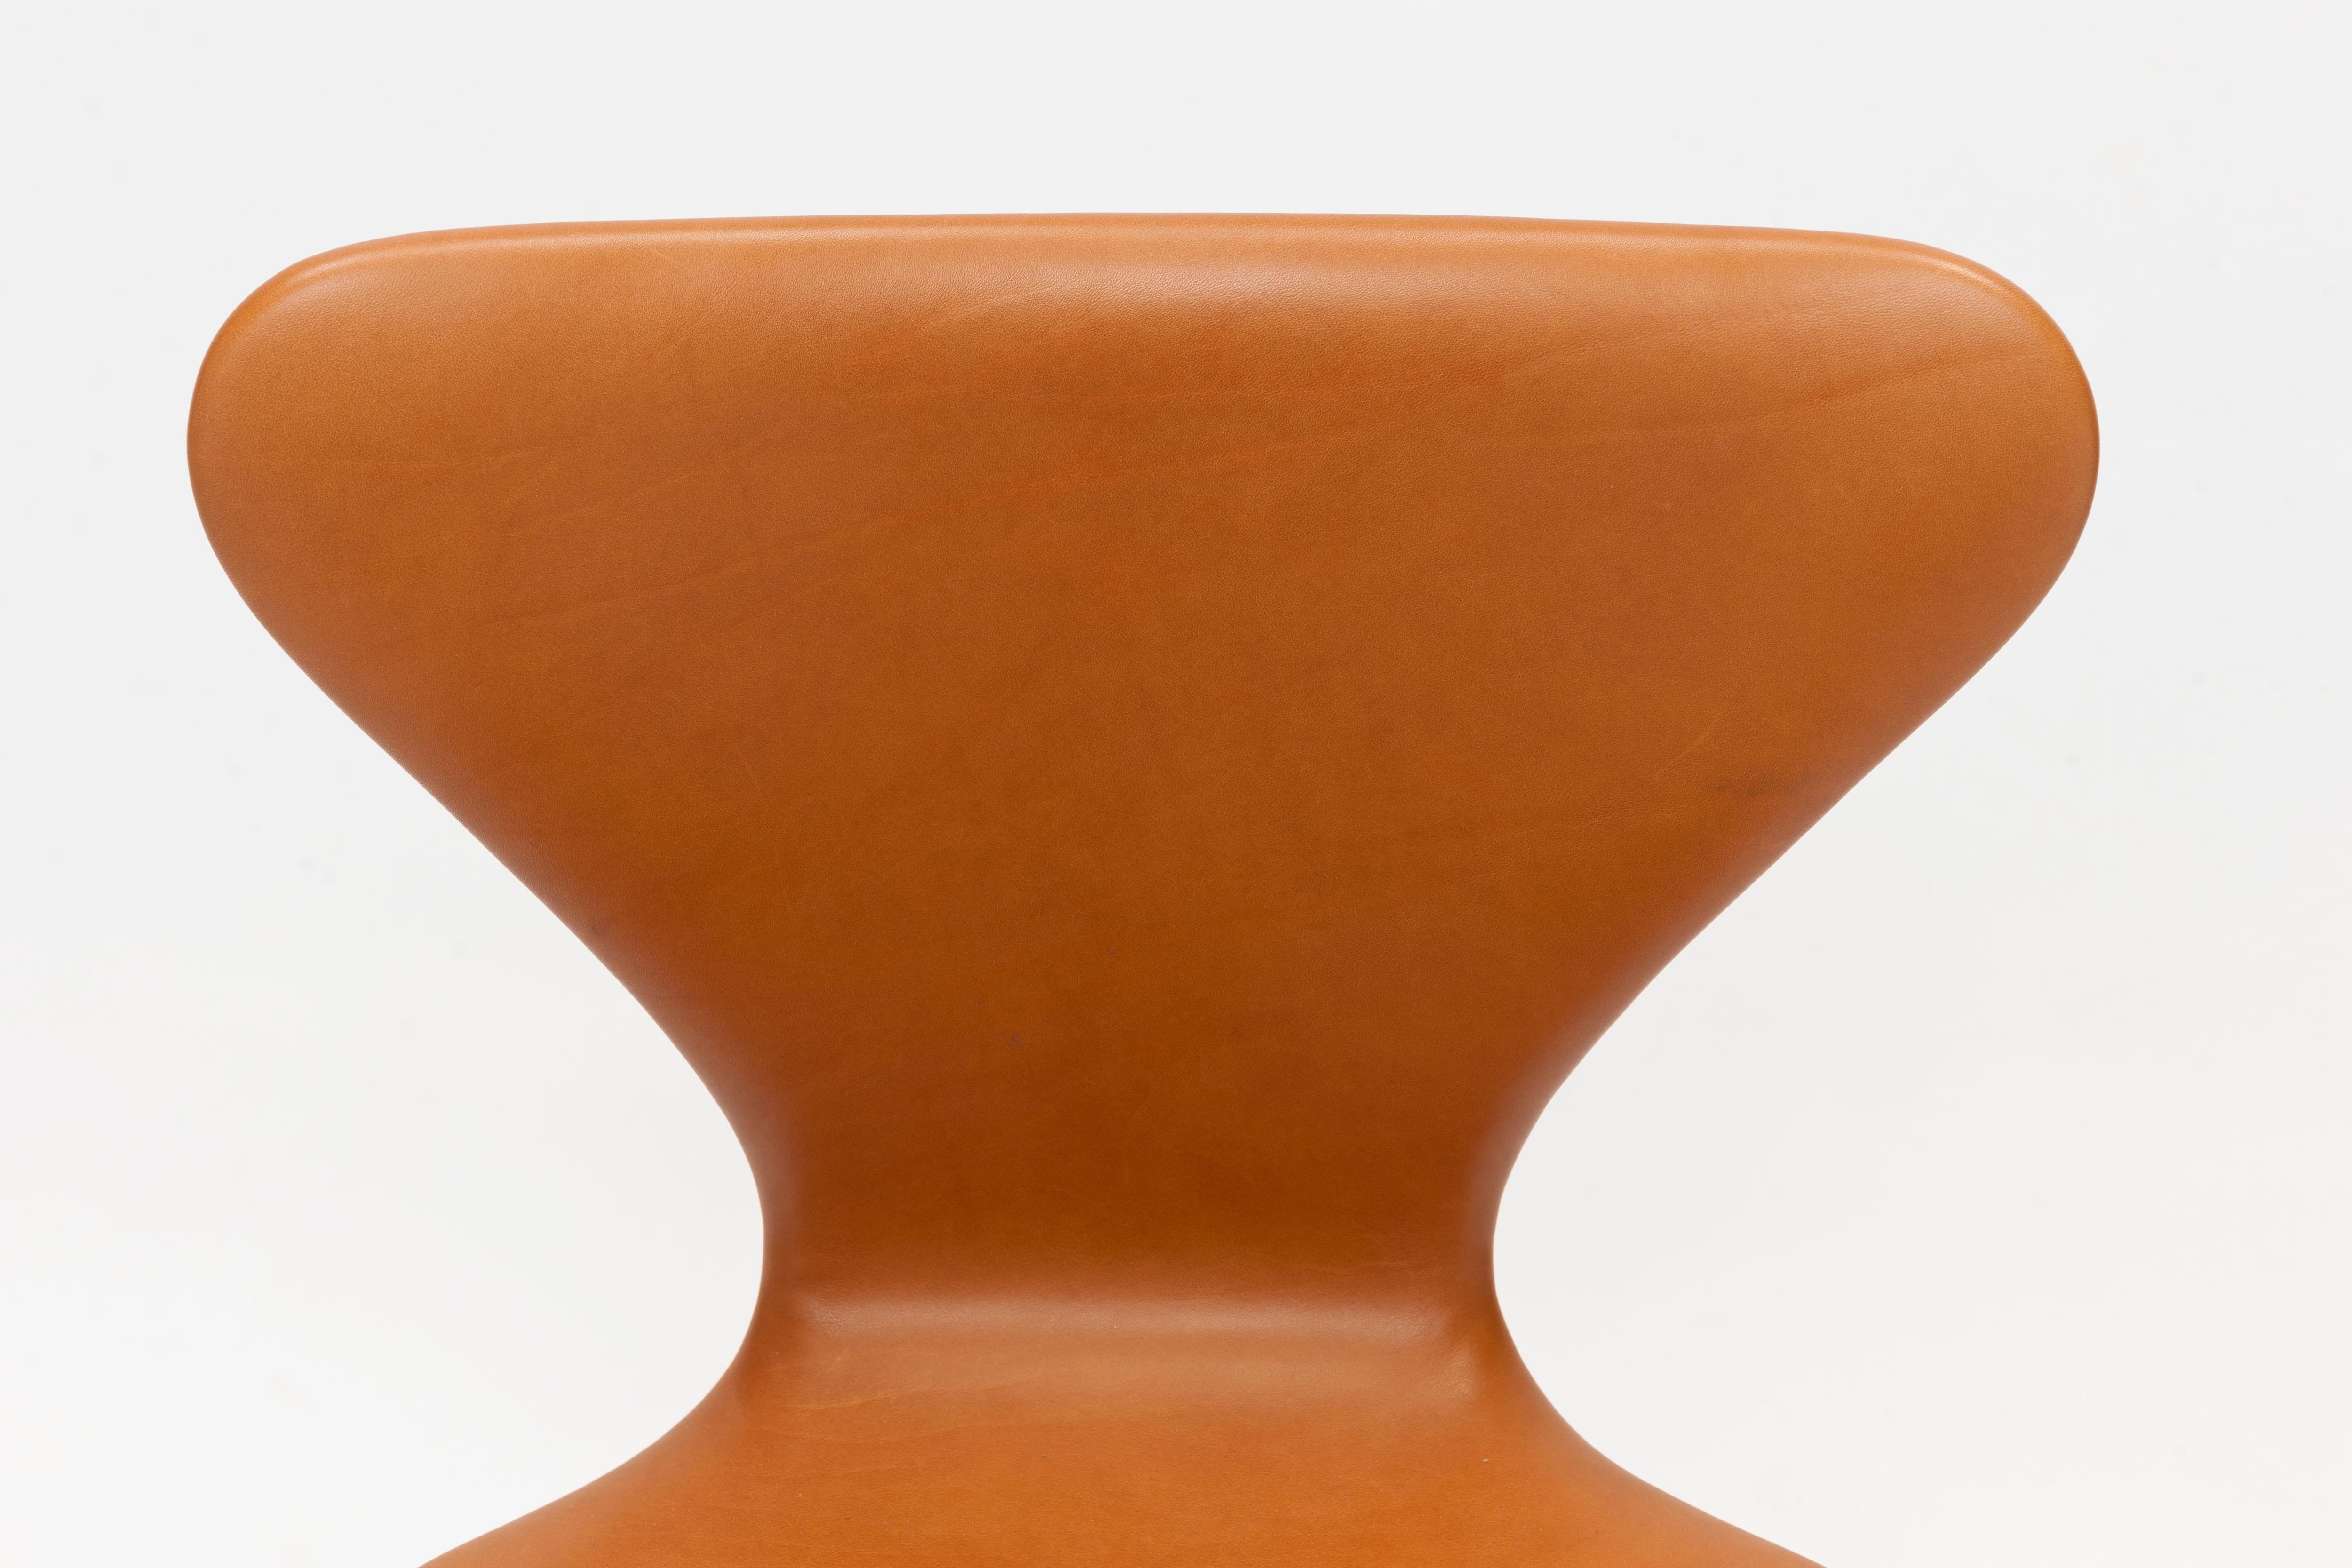 Early Cognac Leather Arne Jacobsen 3117 Desk Swivel Chair by Fritz Hansen 1